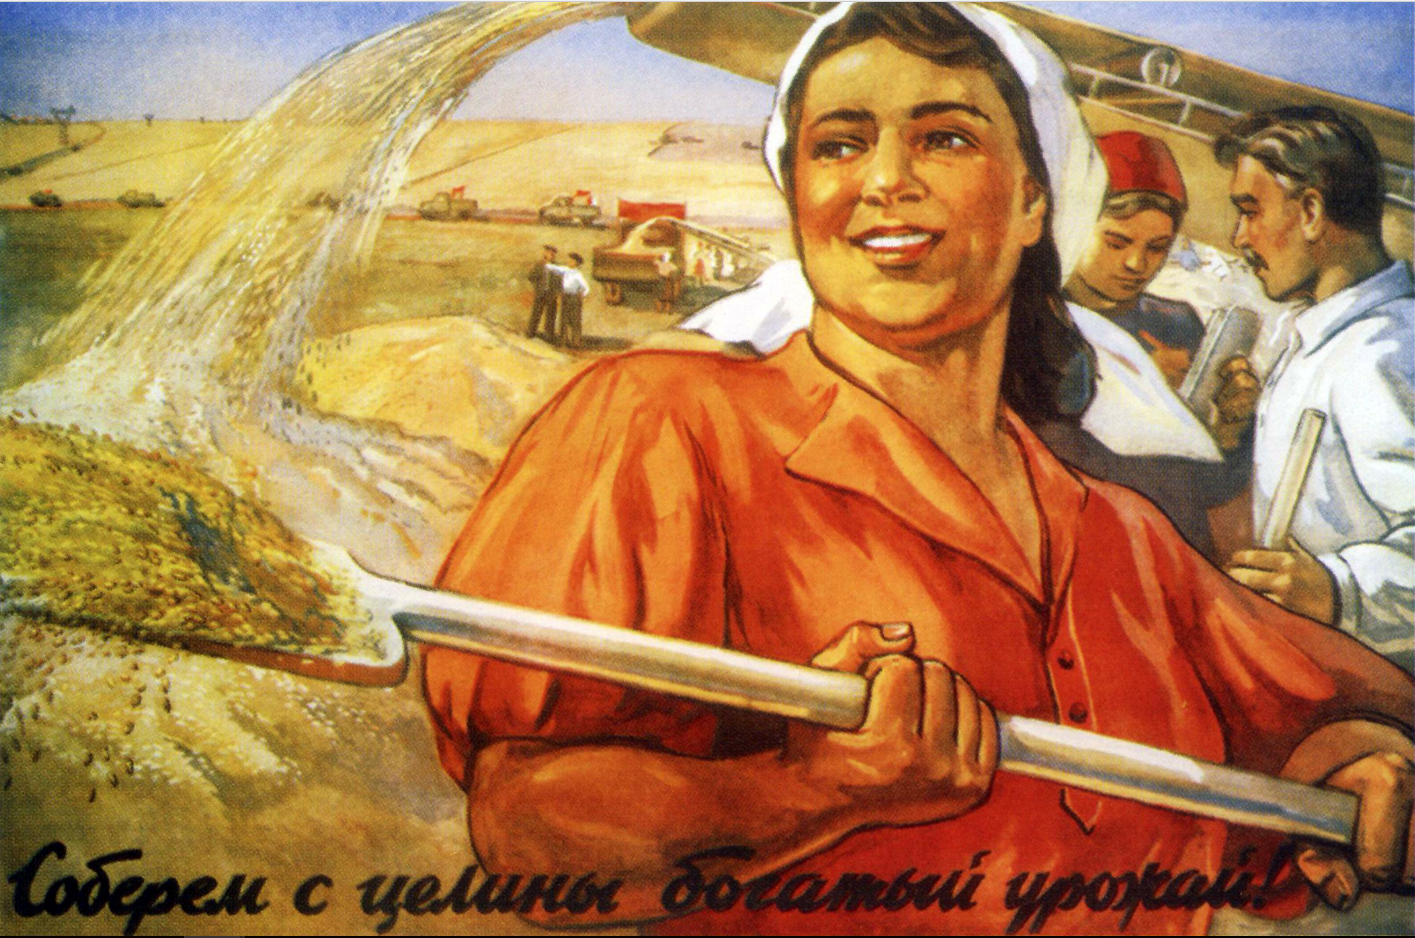 Sovjetski plakat iz leta 1927, ki kliče k razvoju kmetijstva. Avtor je Oleg Mihajlovič Savostjuk.